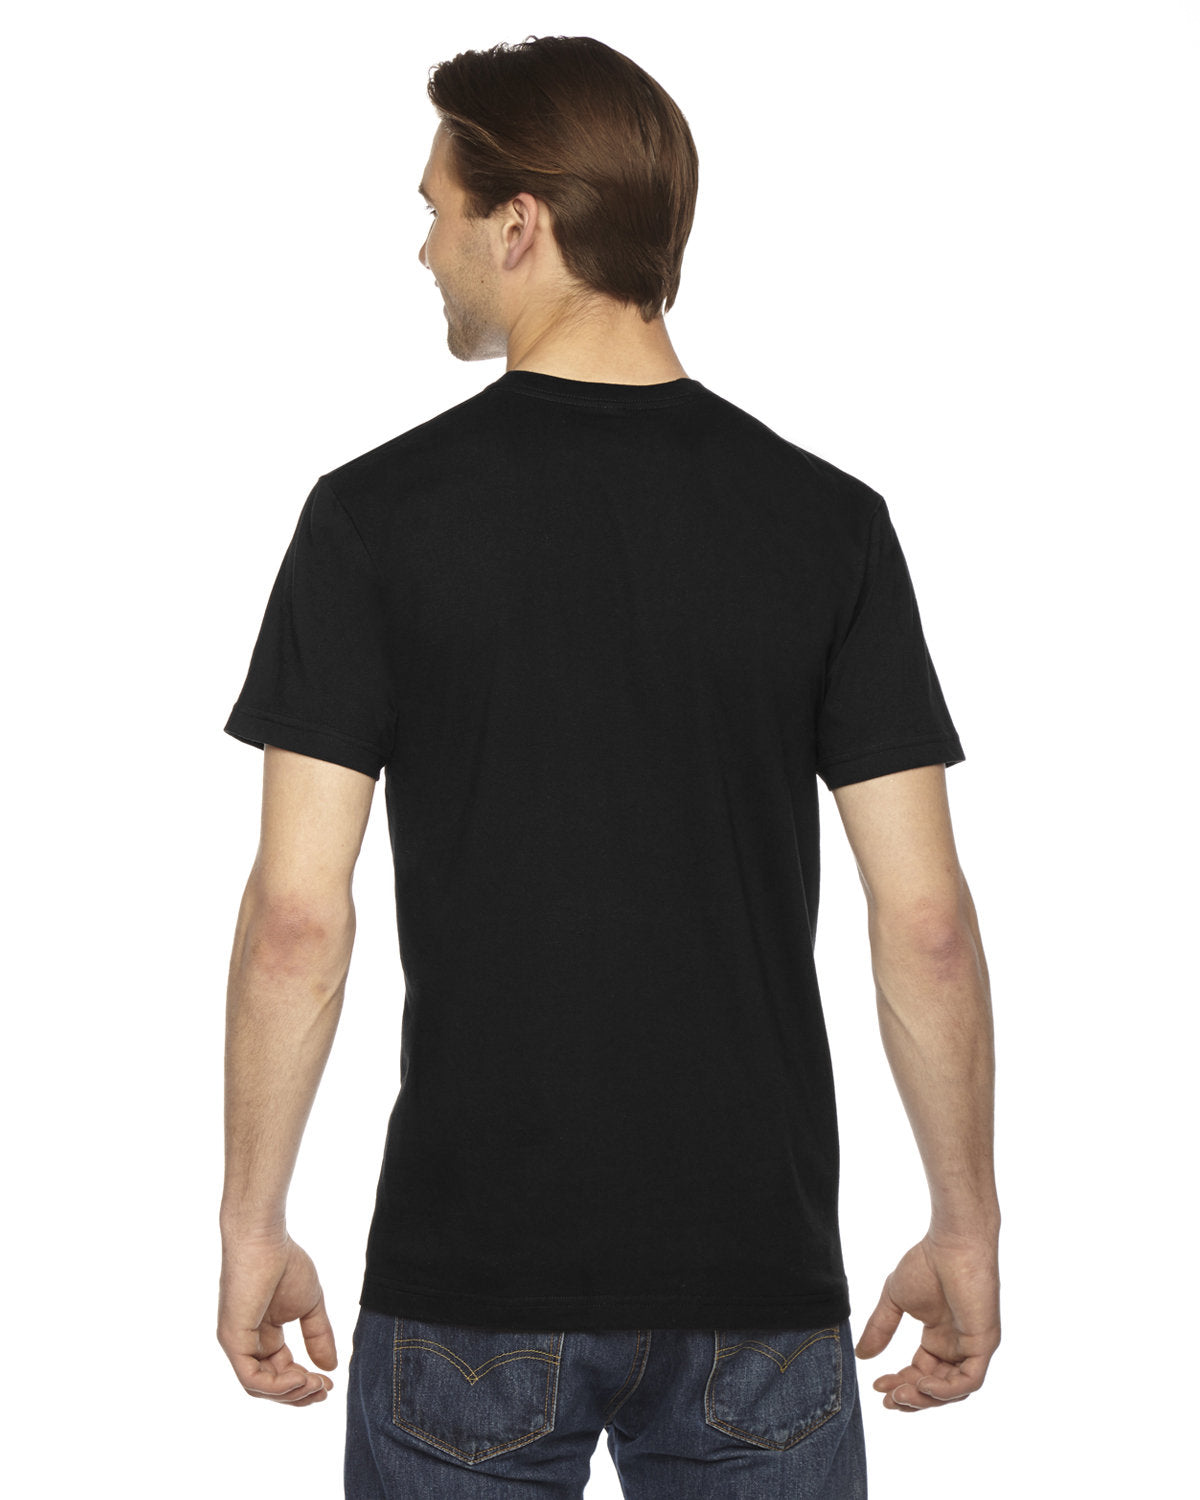 Black t-shirt, back view.